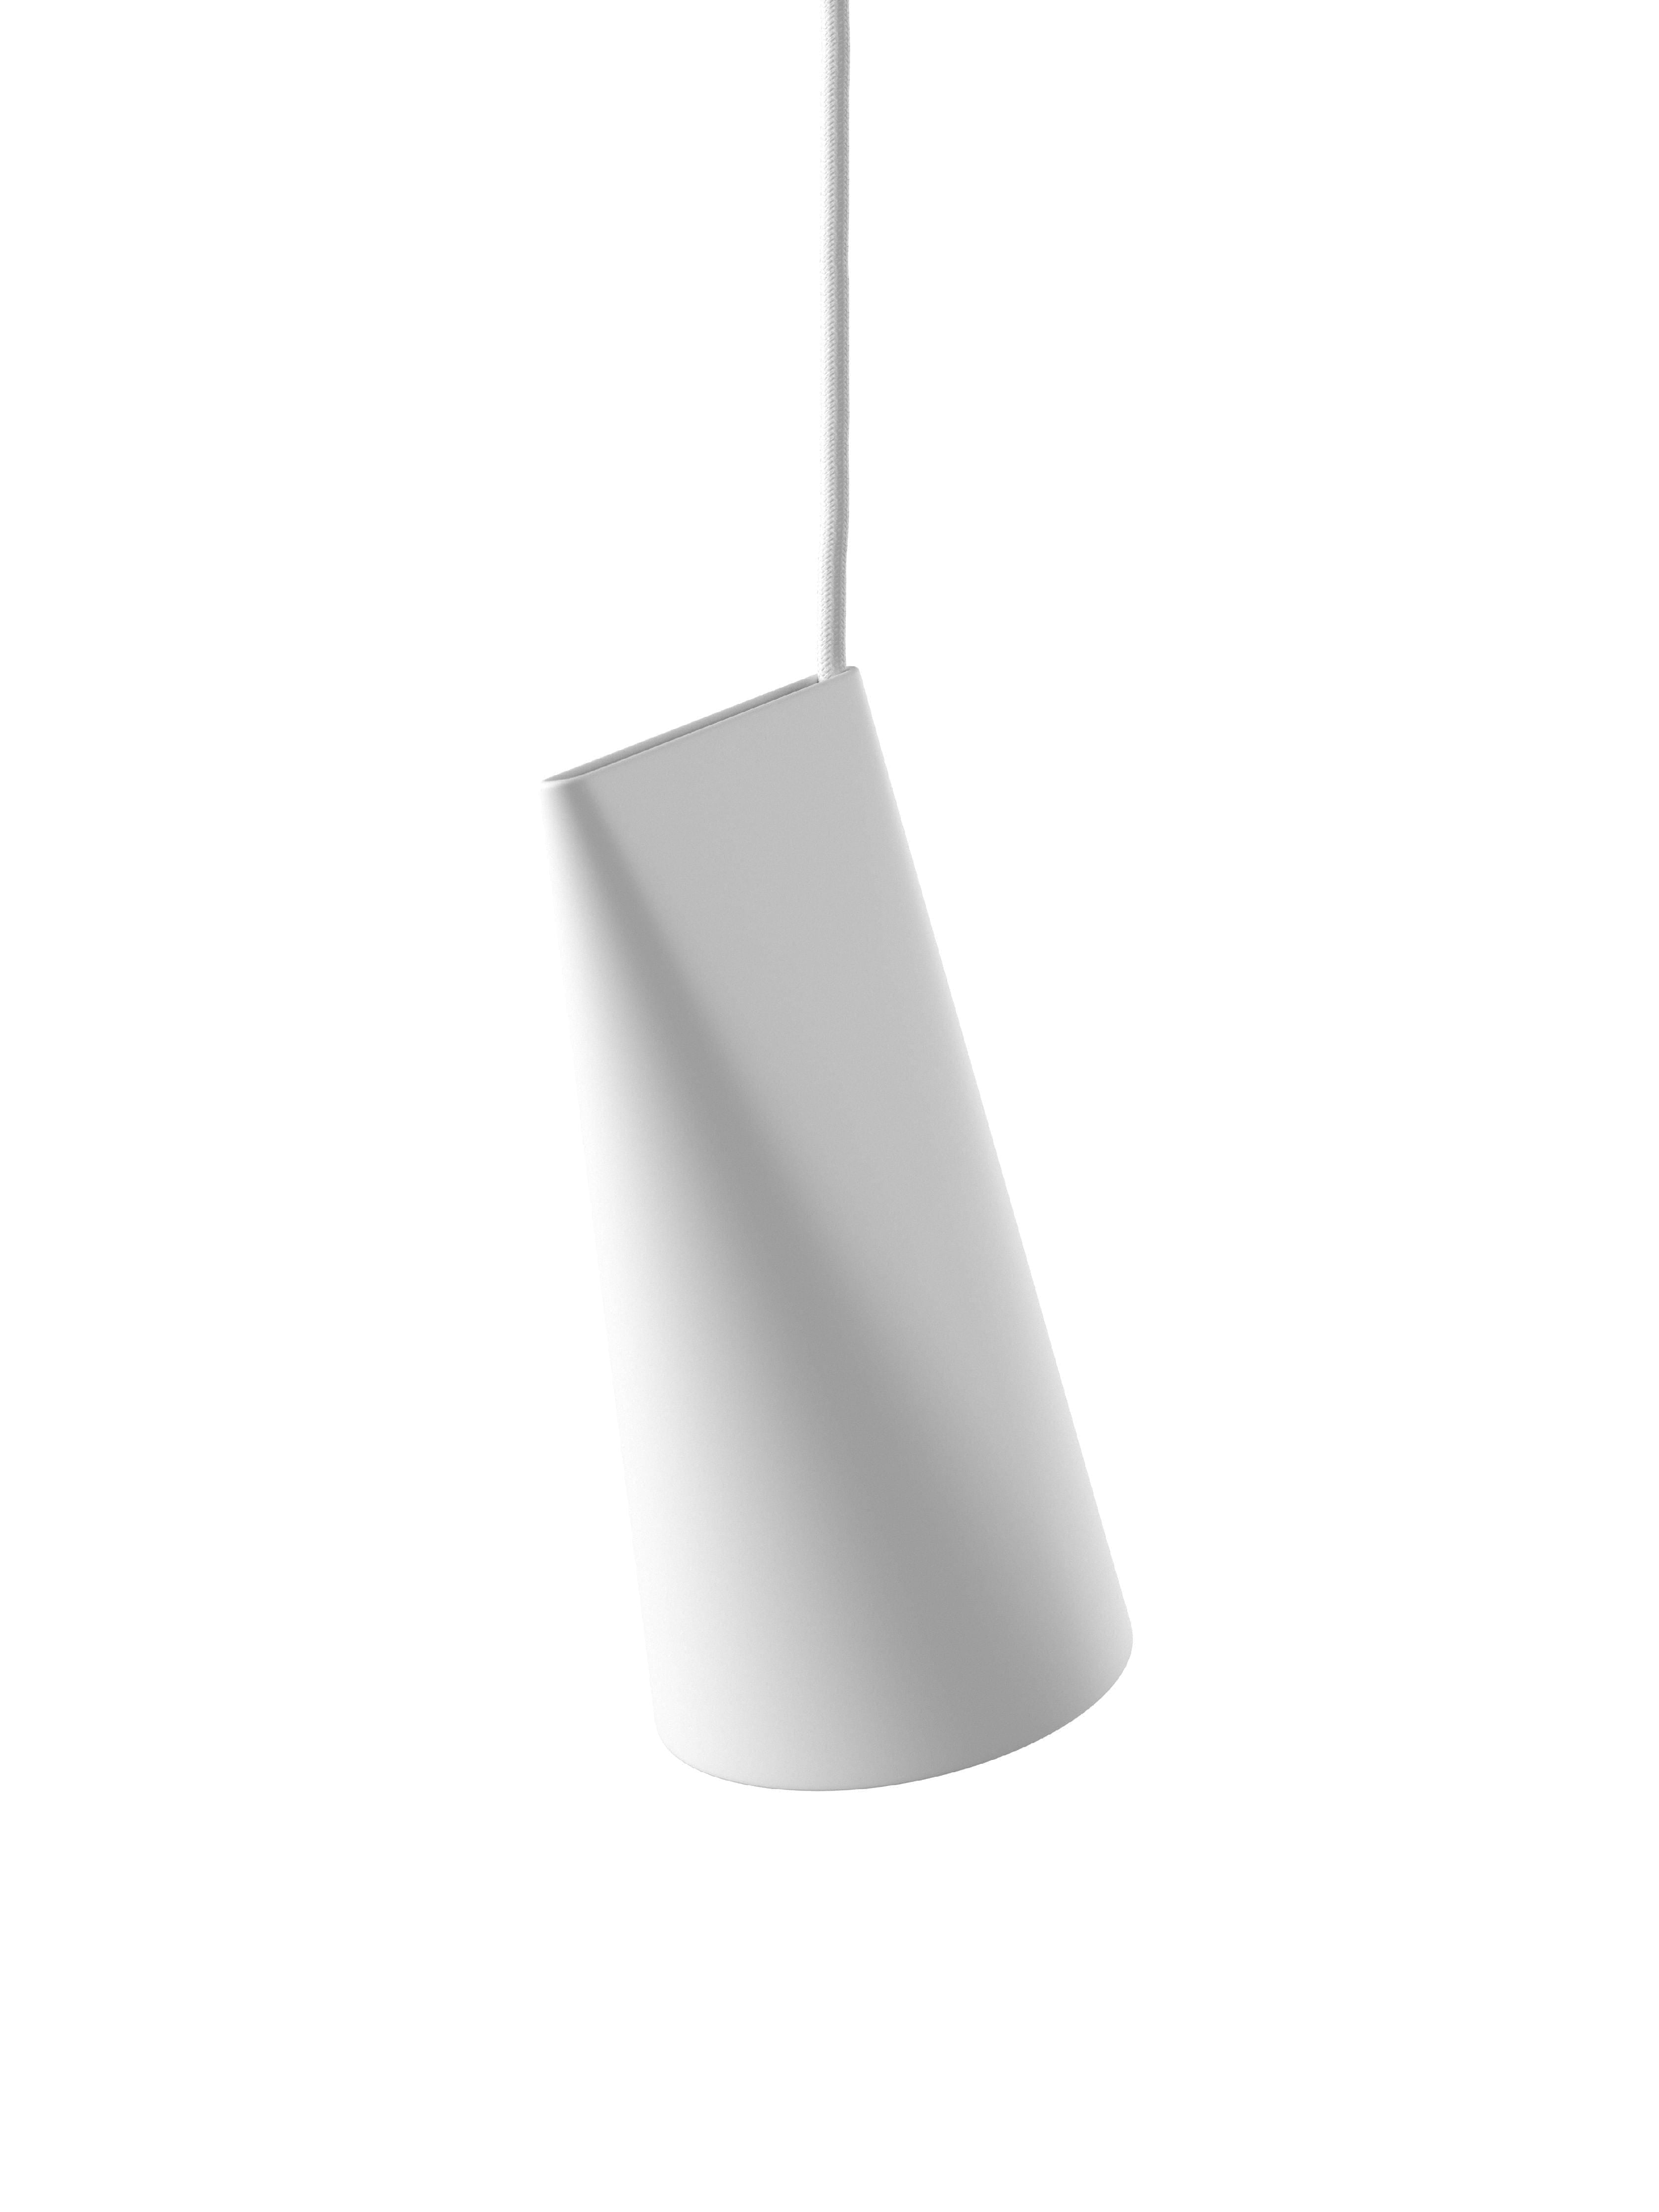 Moebe -Keramik -Anhänger -Lampe 11 cm, weiß